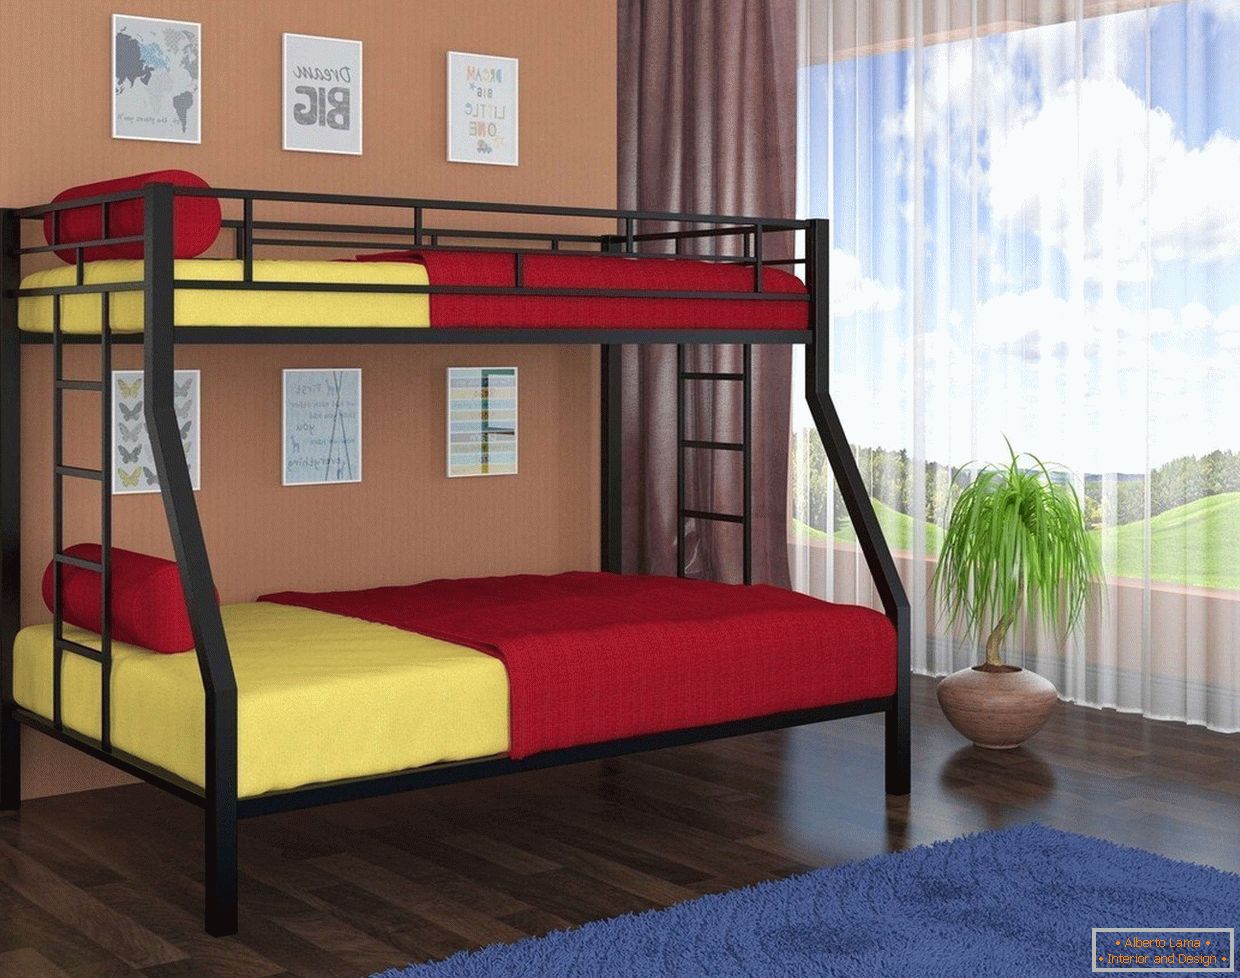 Žlté a červené posteľné prádlo na poschodovej posteli